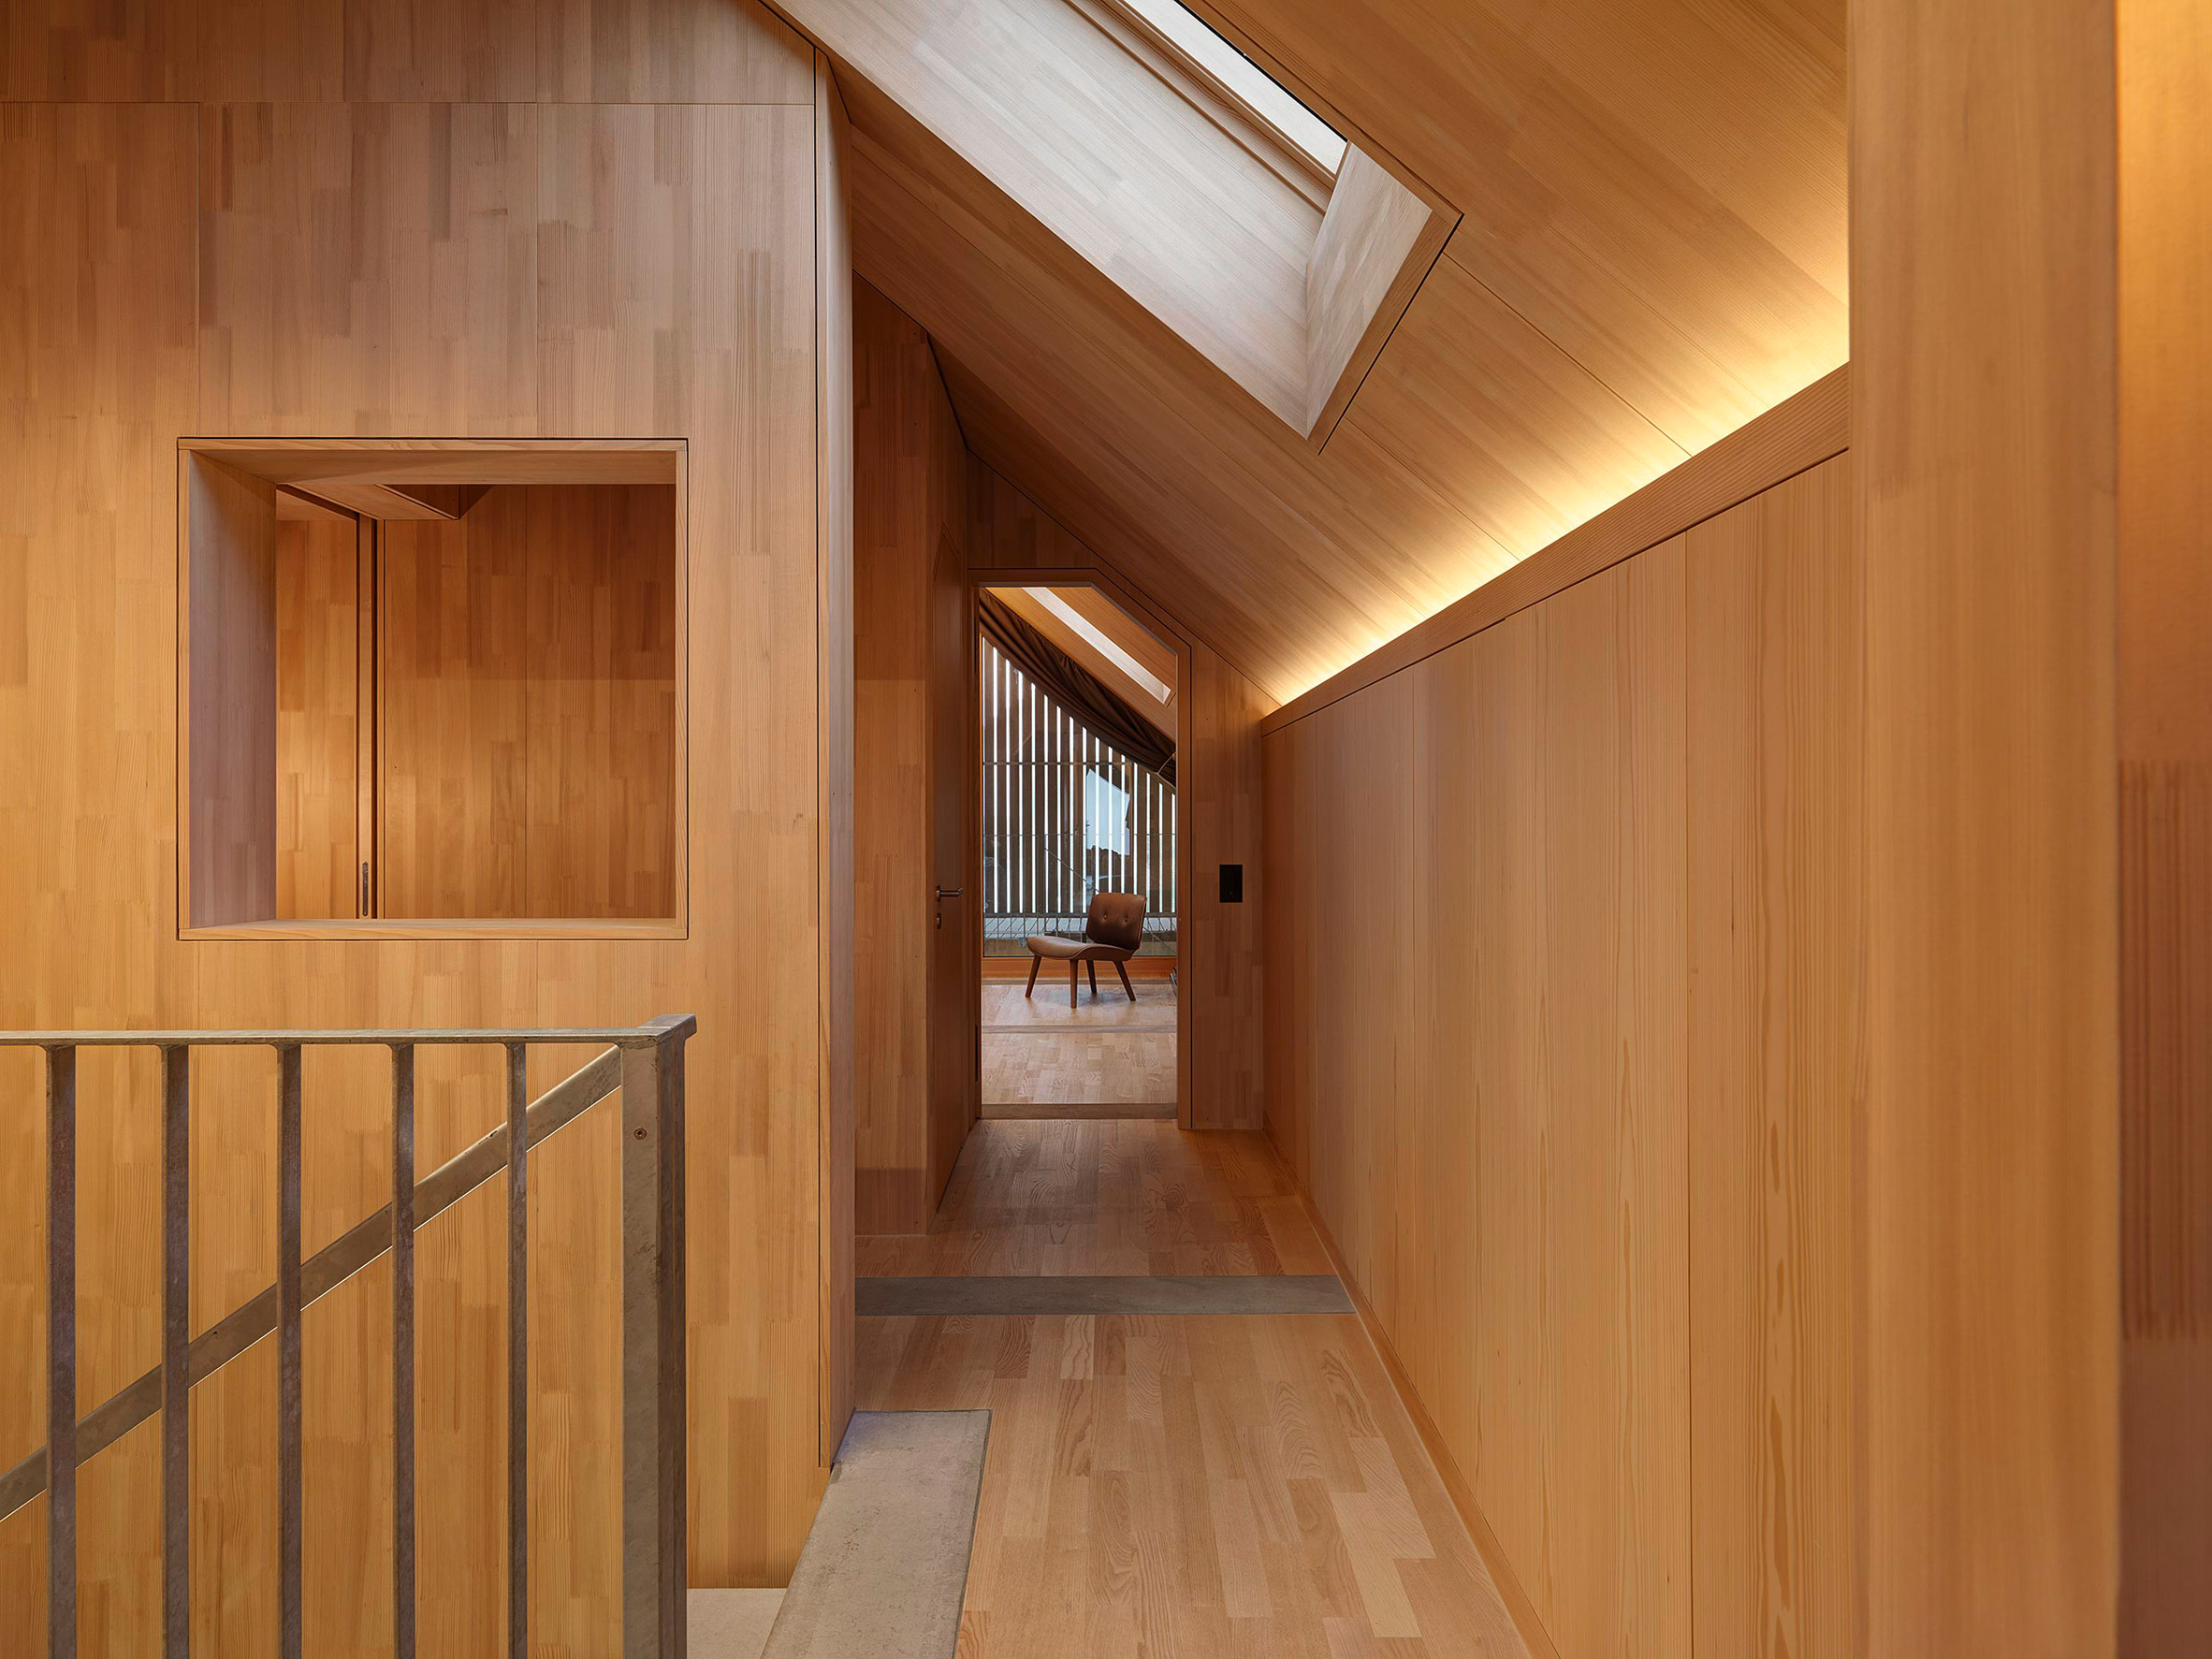 Wooden corridor